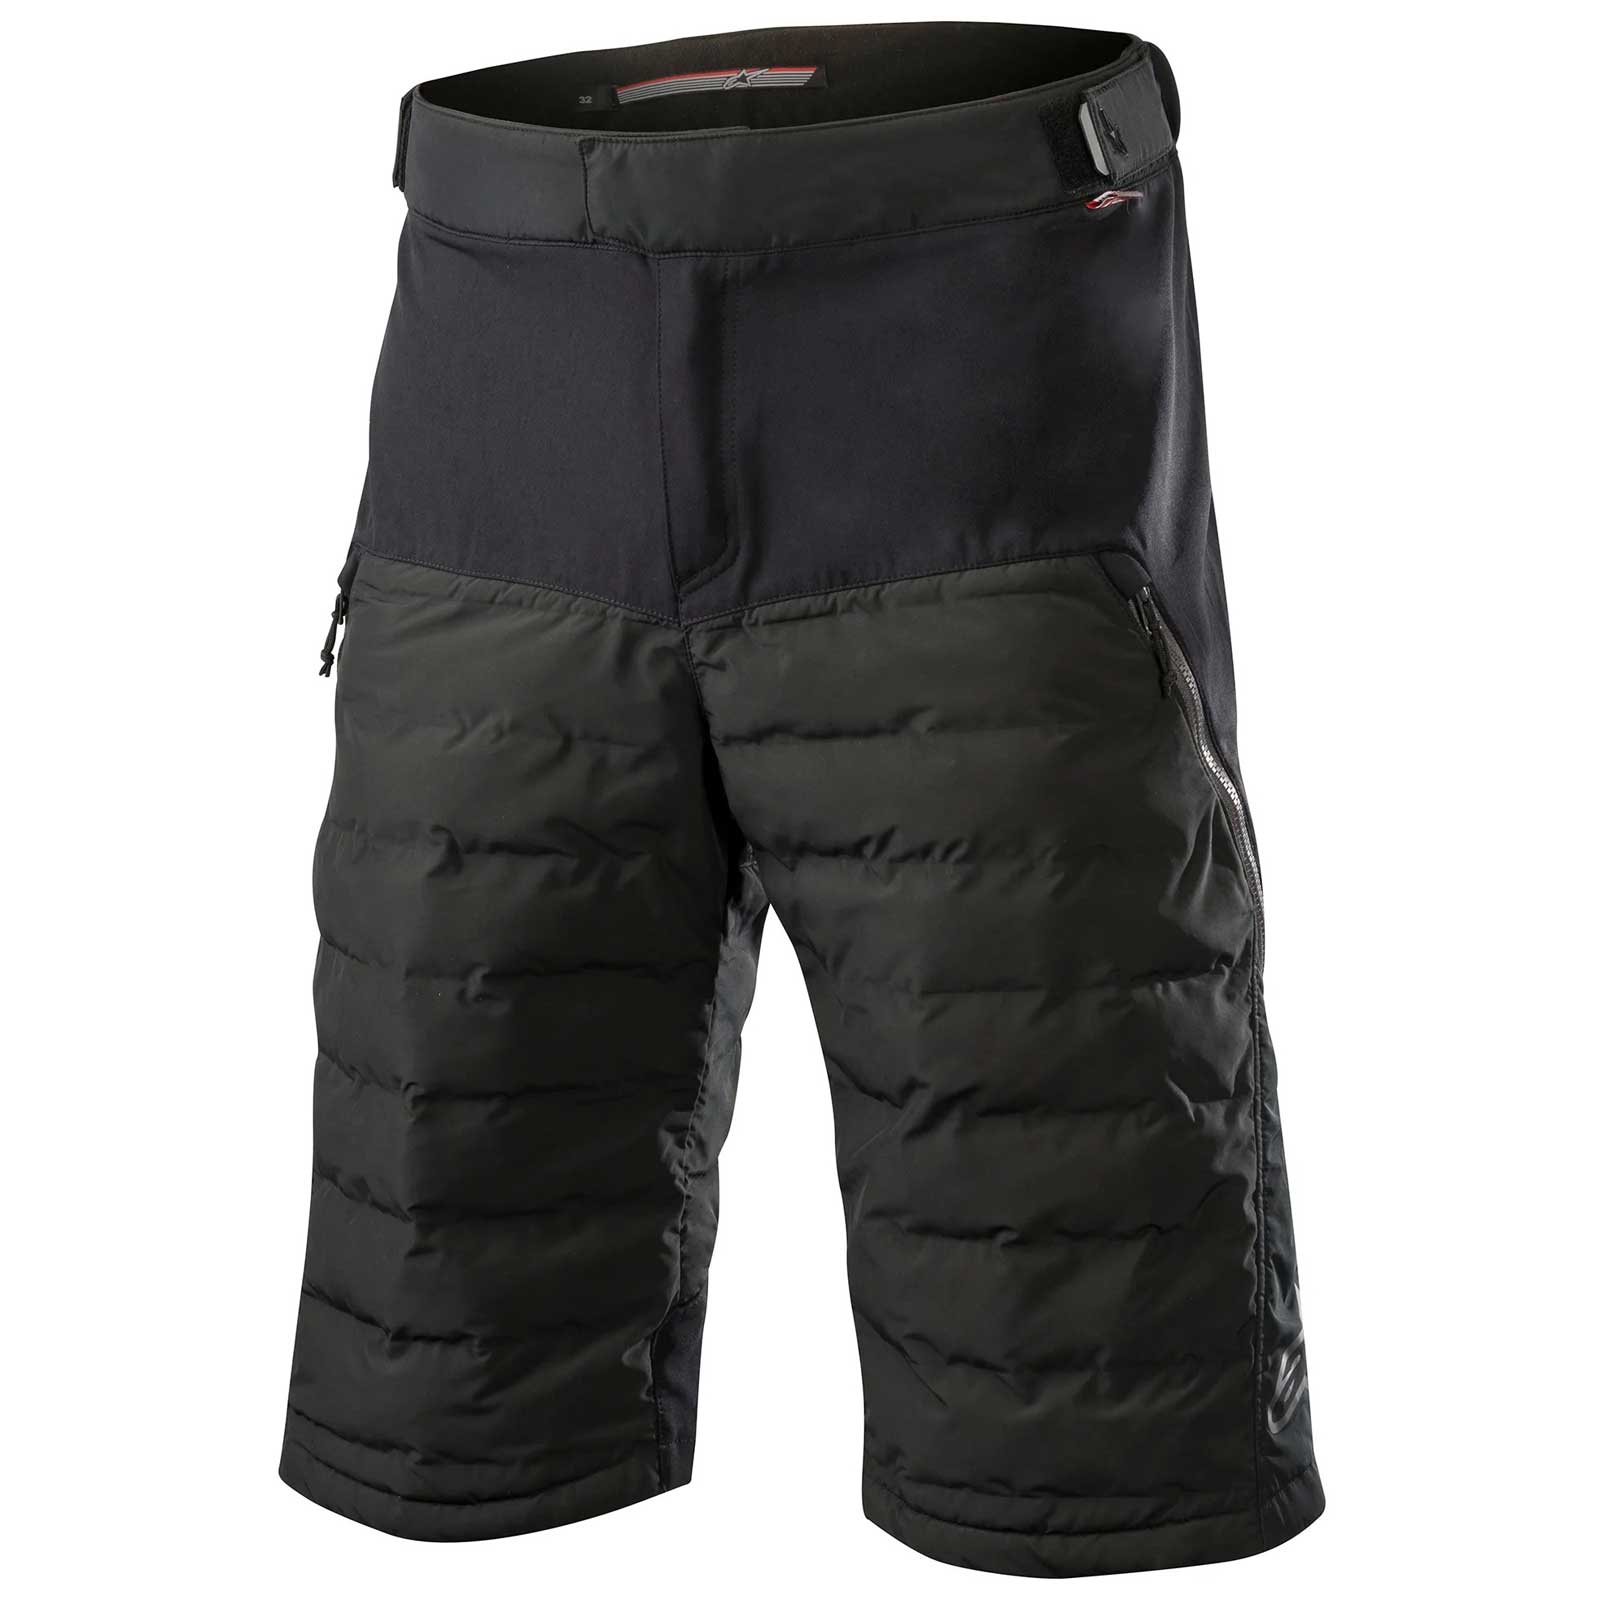 Produktbild von Alpinestars Denali Shorts - schwarz